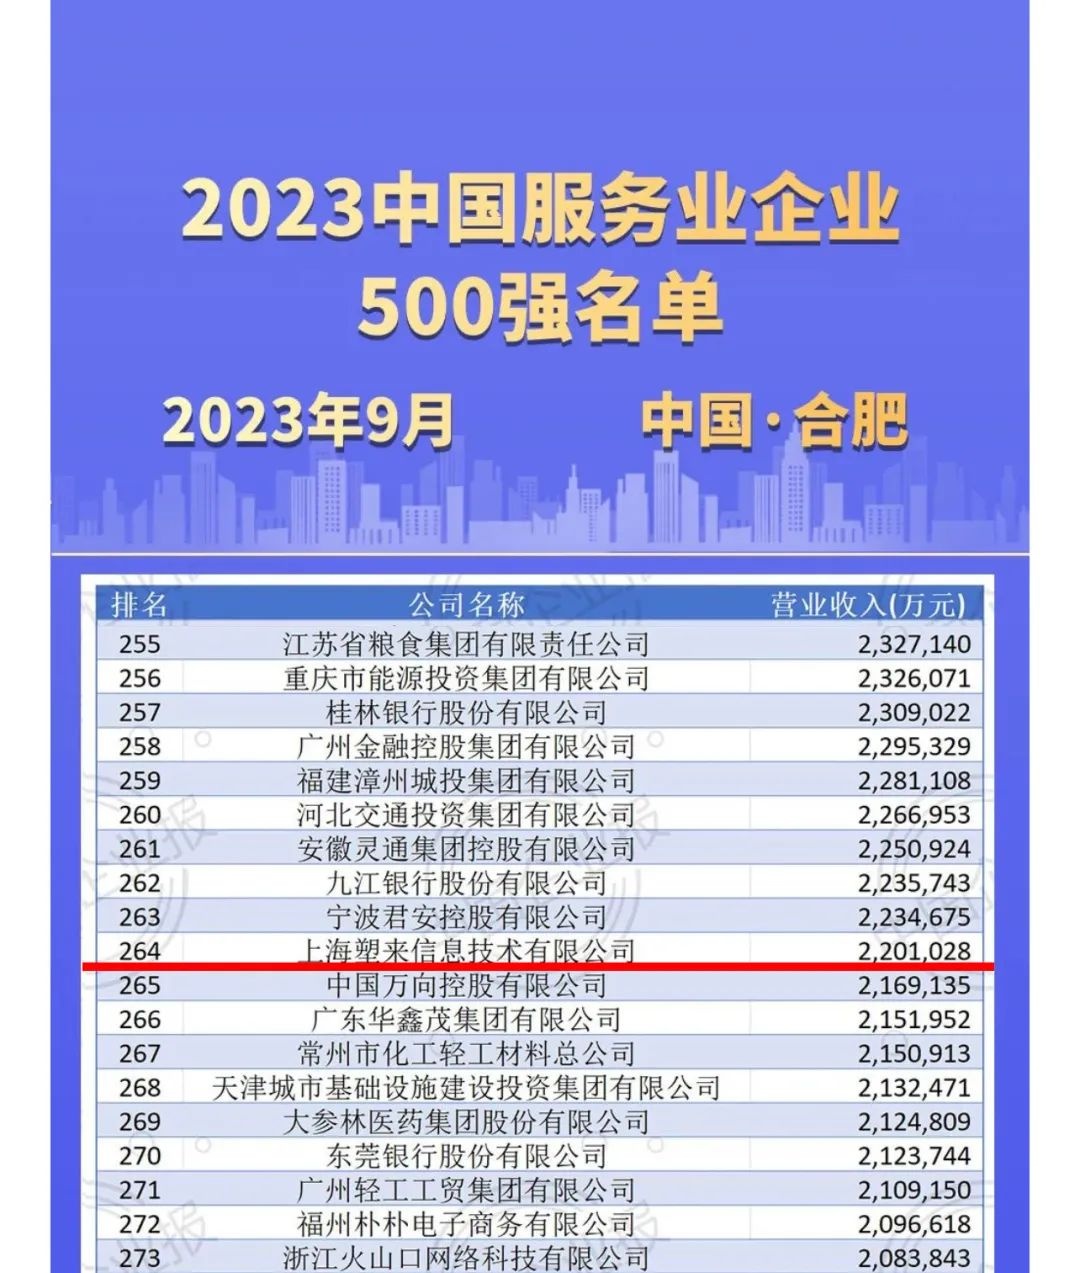 卓尔智联化塑汇再次上榜“中国服务业企业500强”，位居第264位